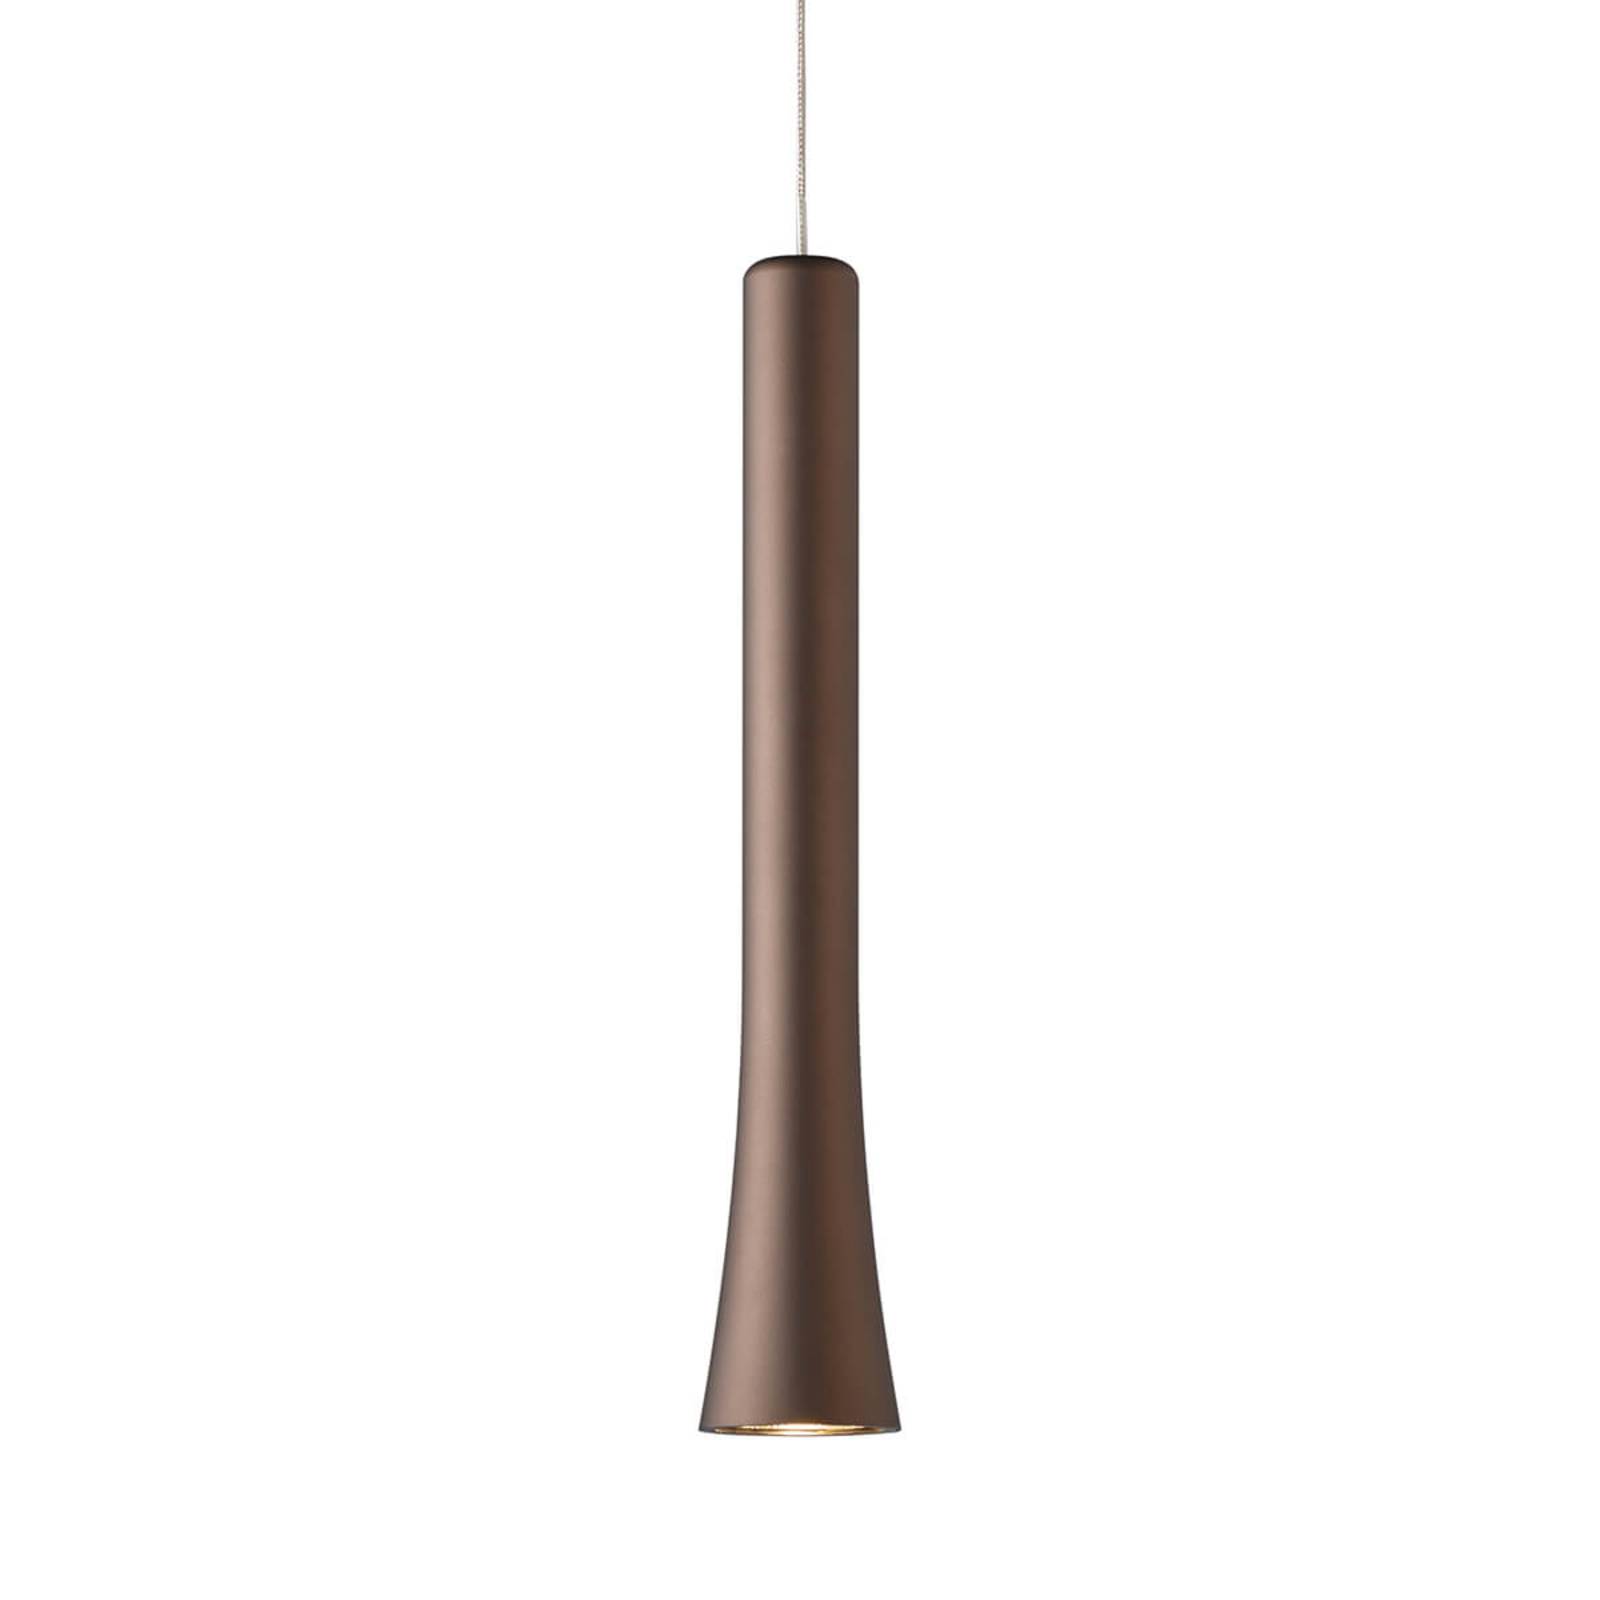 Lampa wisząca LED Rio, elegancki kształt, brąz